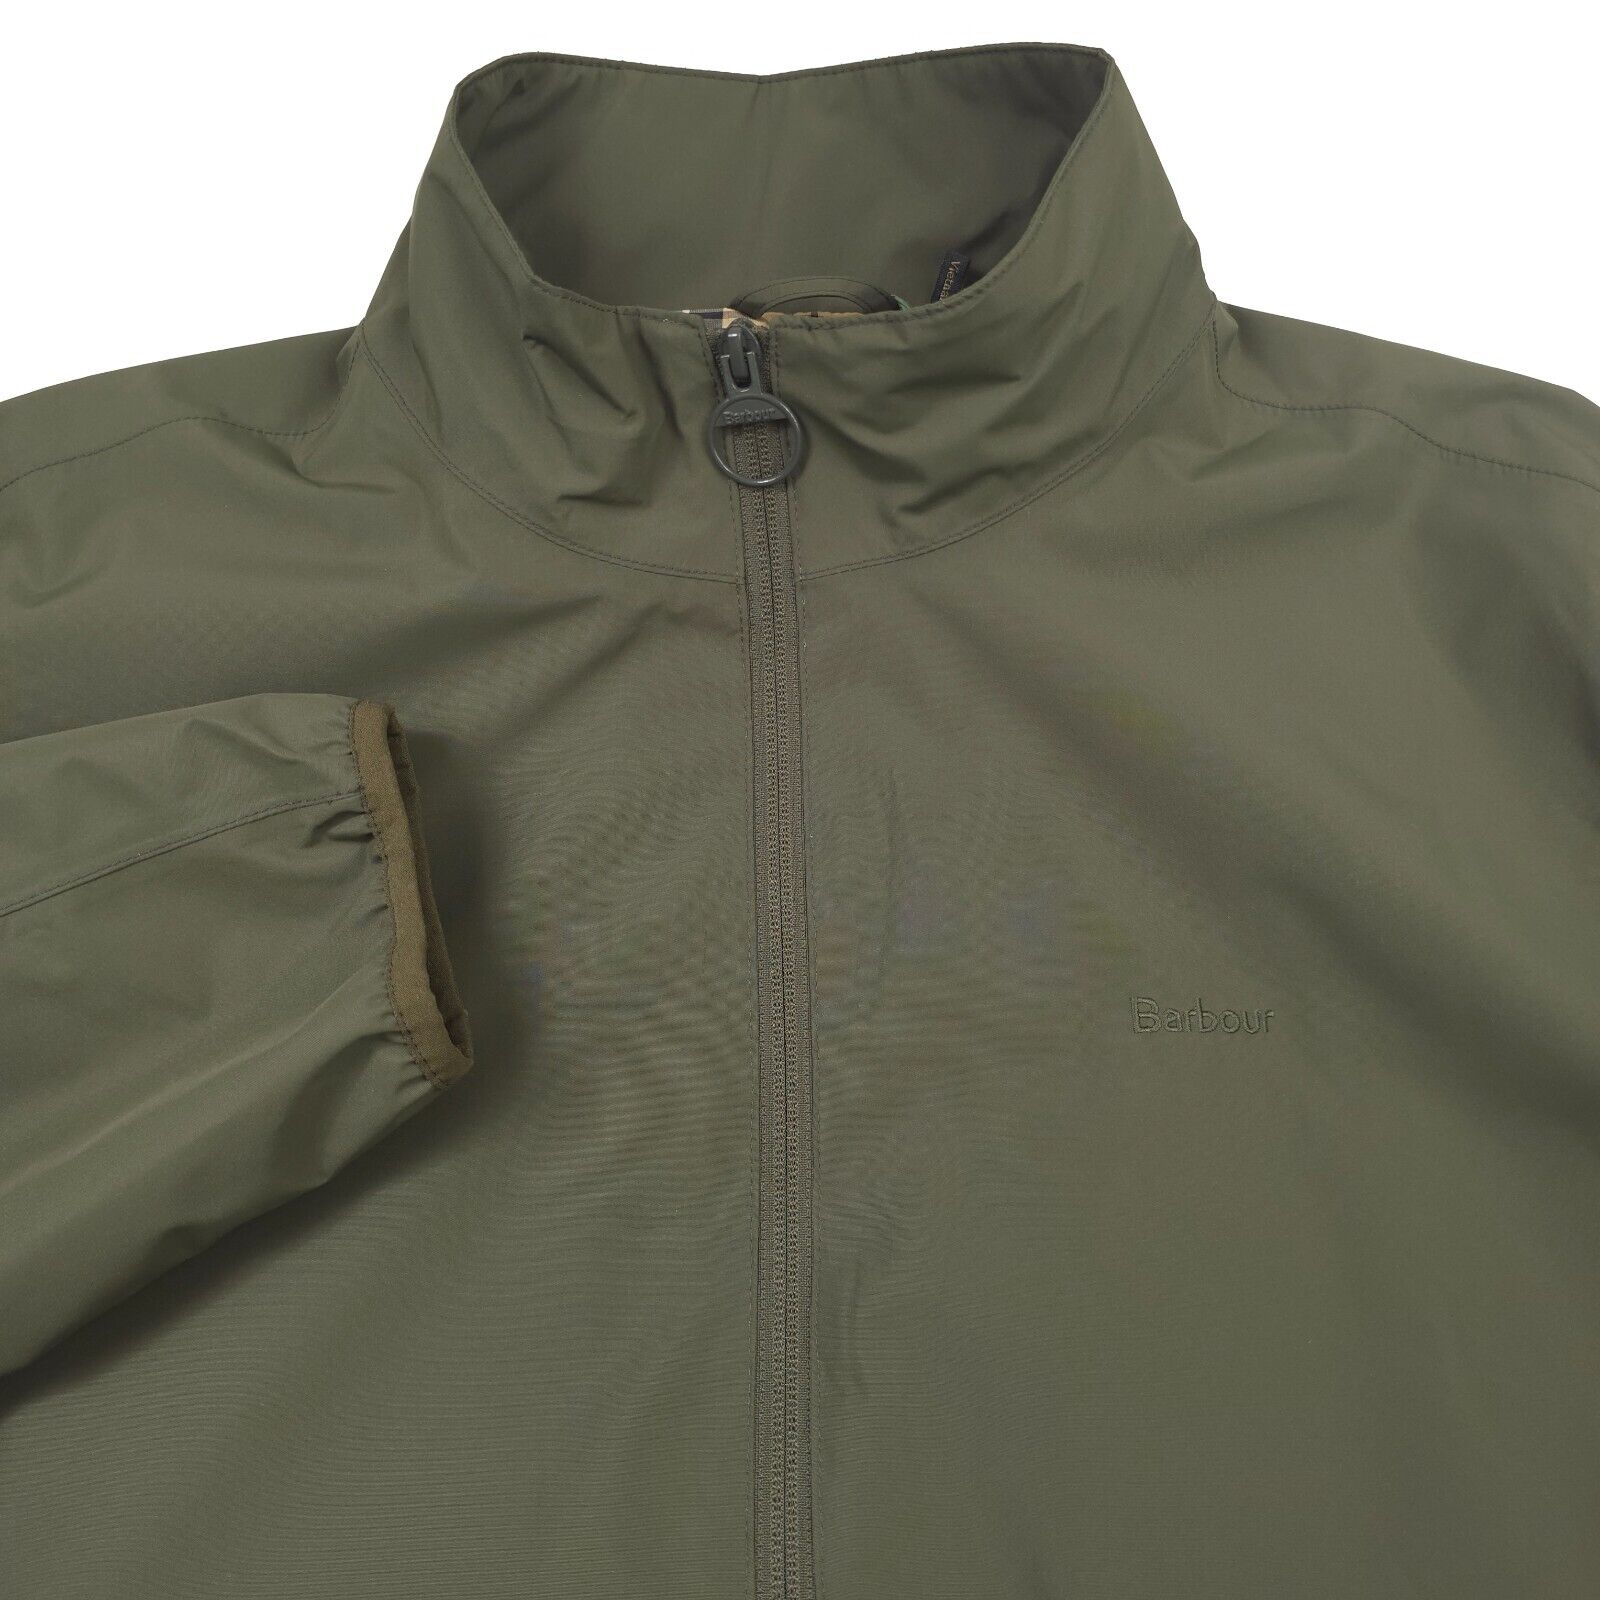 $250 Barbour Korbel Olive Green Full Zip Waterproof Jacket Mens Size 2XL